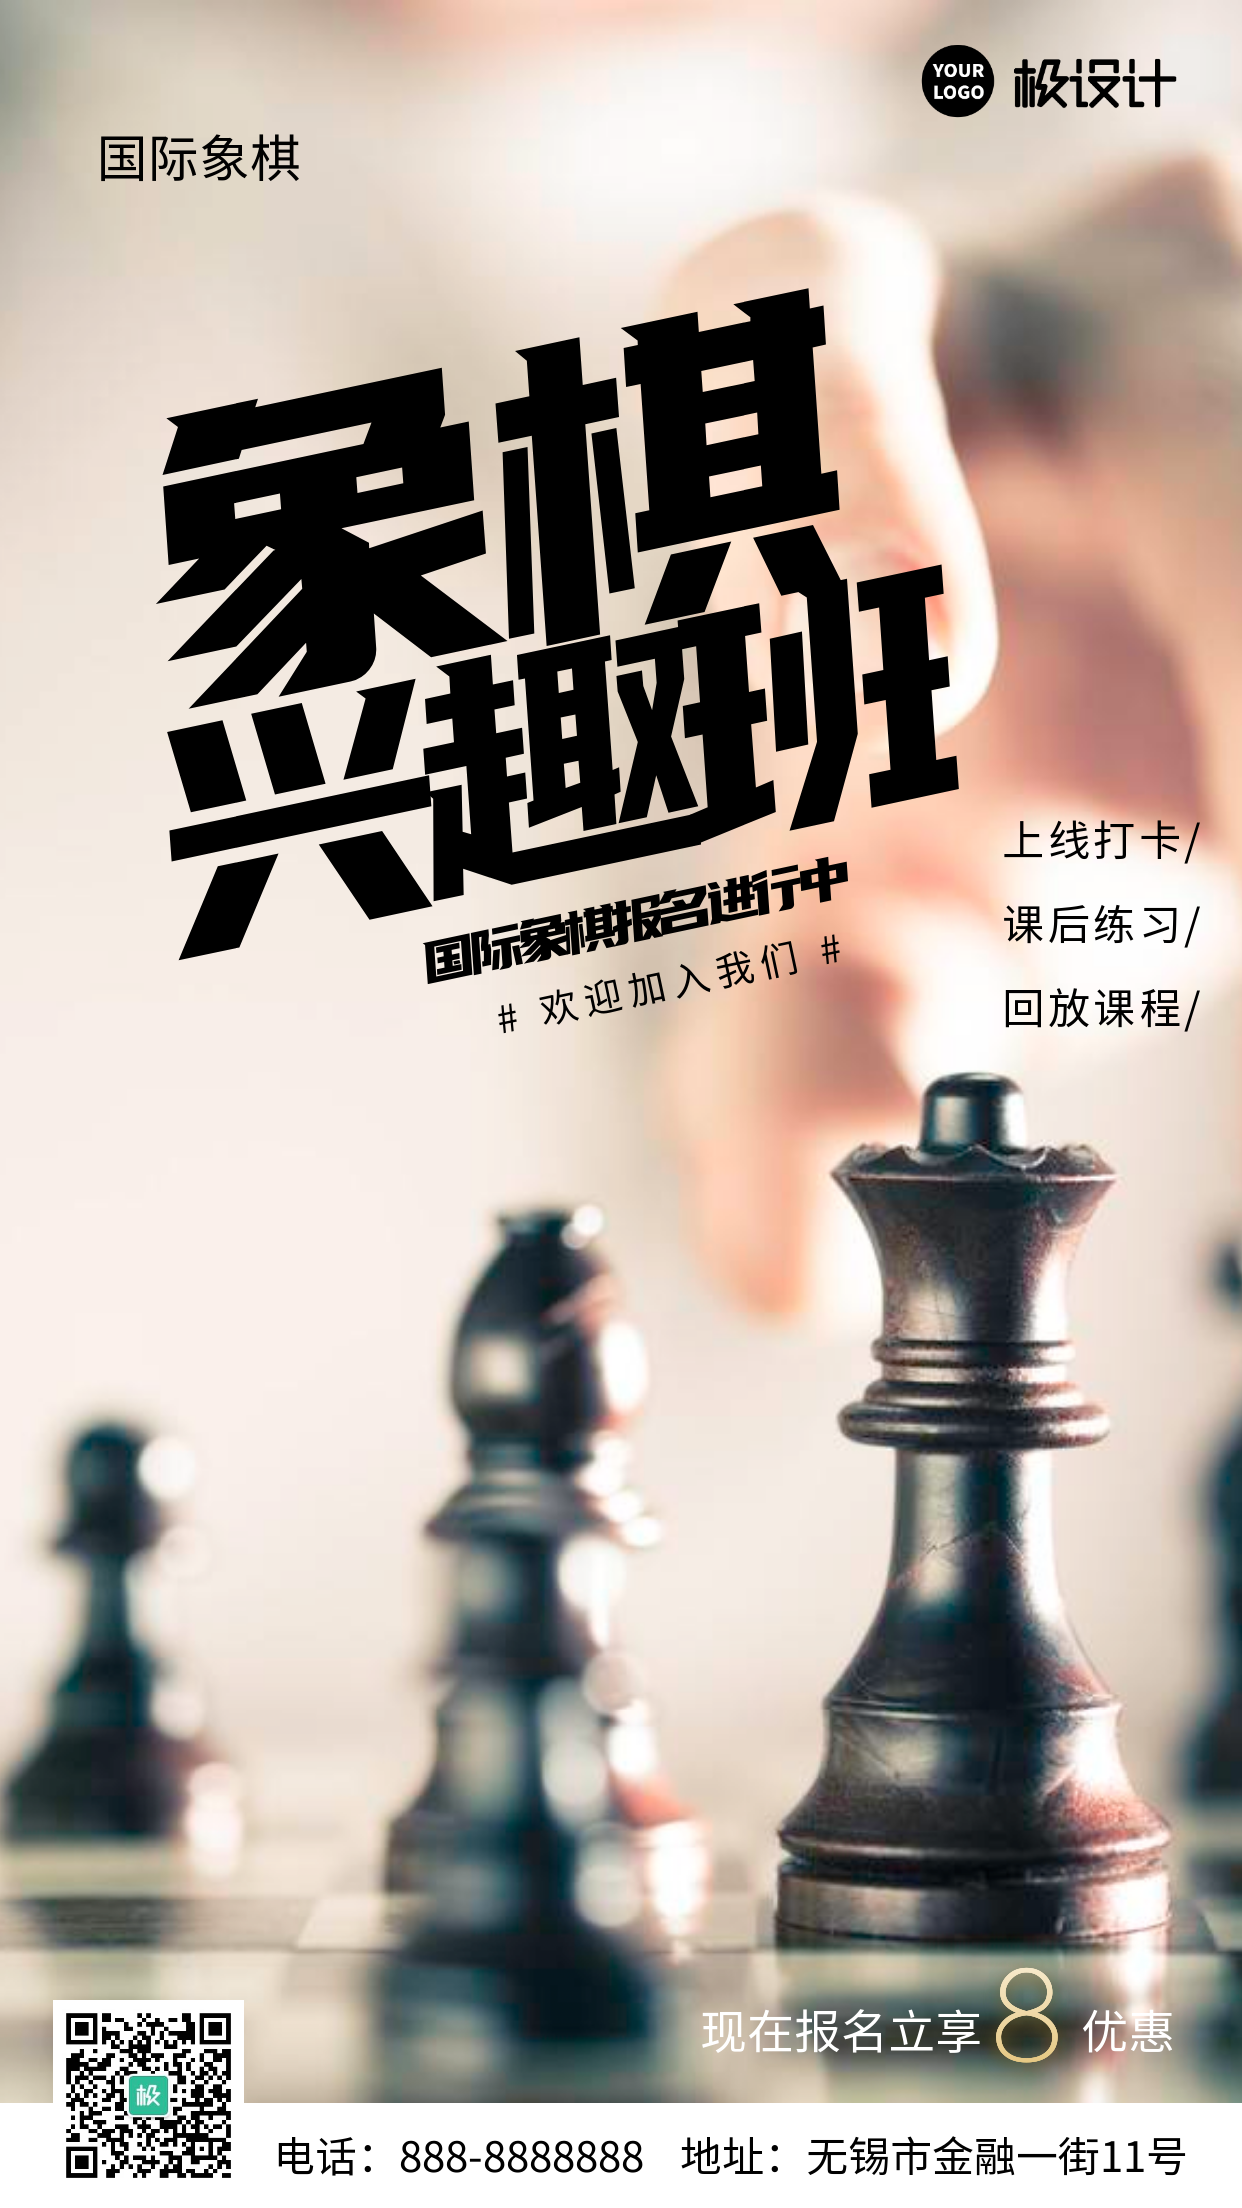 国际象棋兴趣班招生报名活动推广摄影图海报